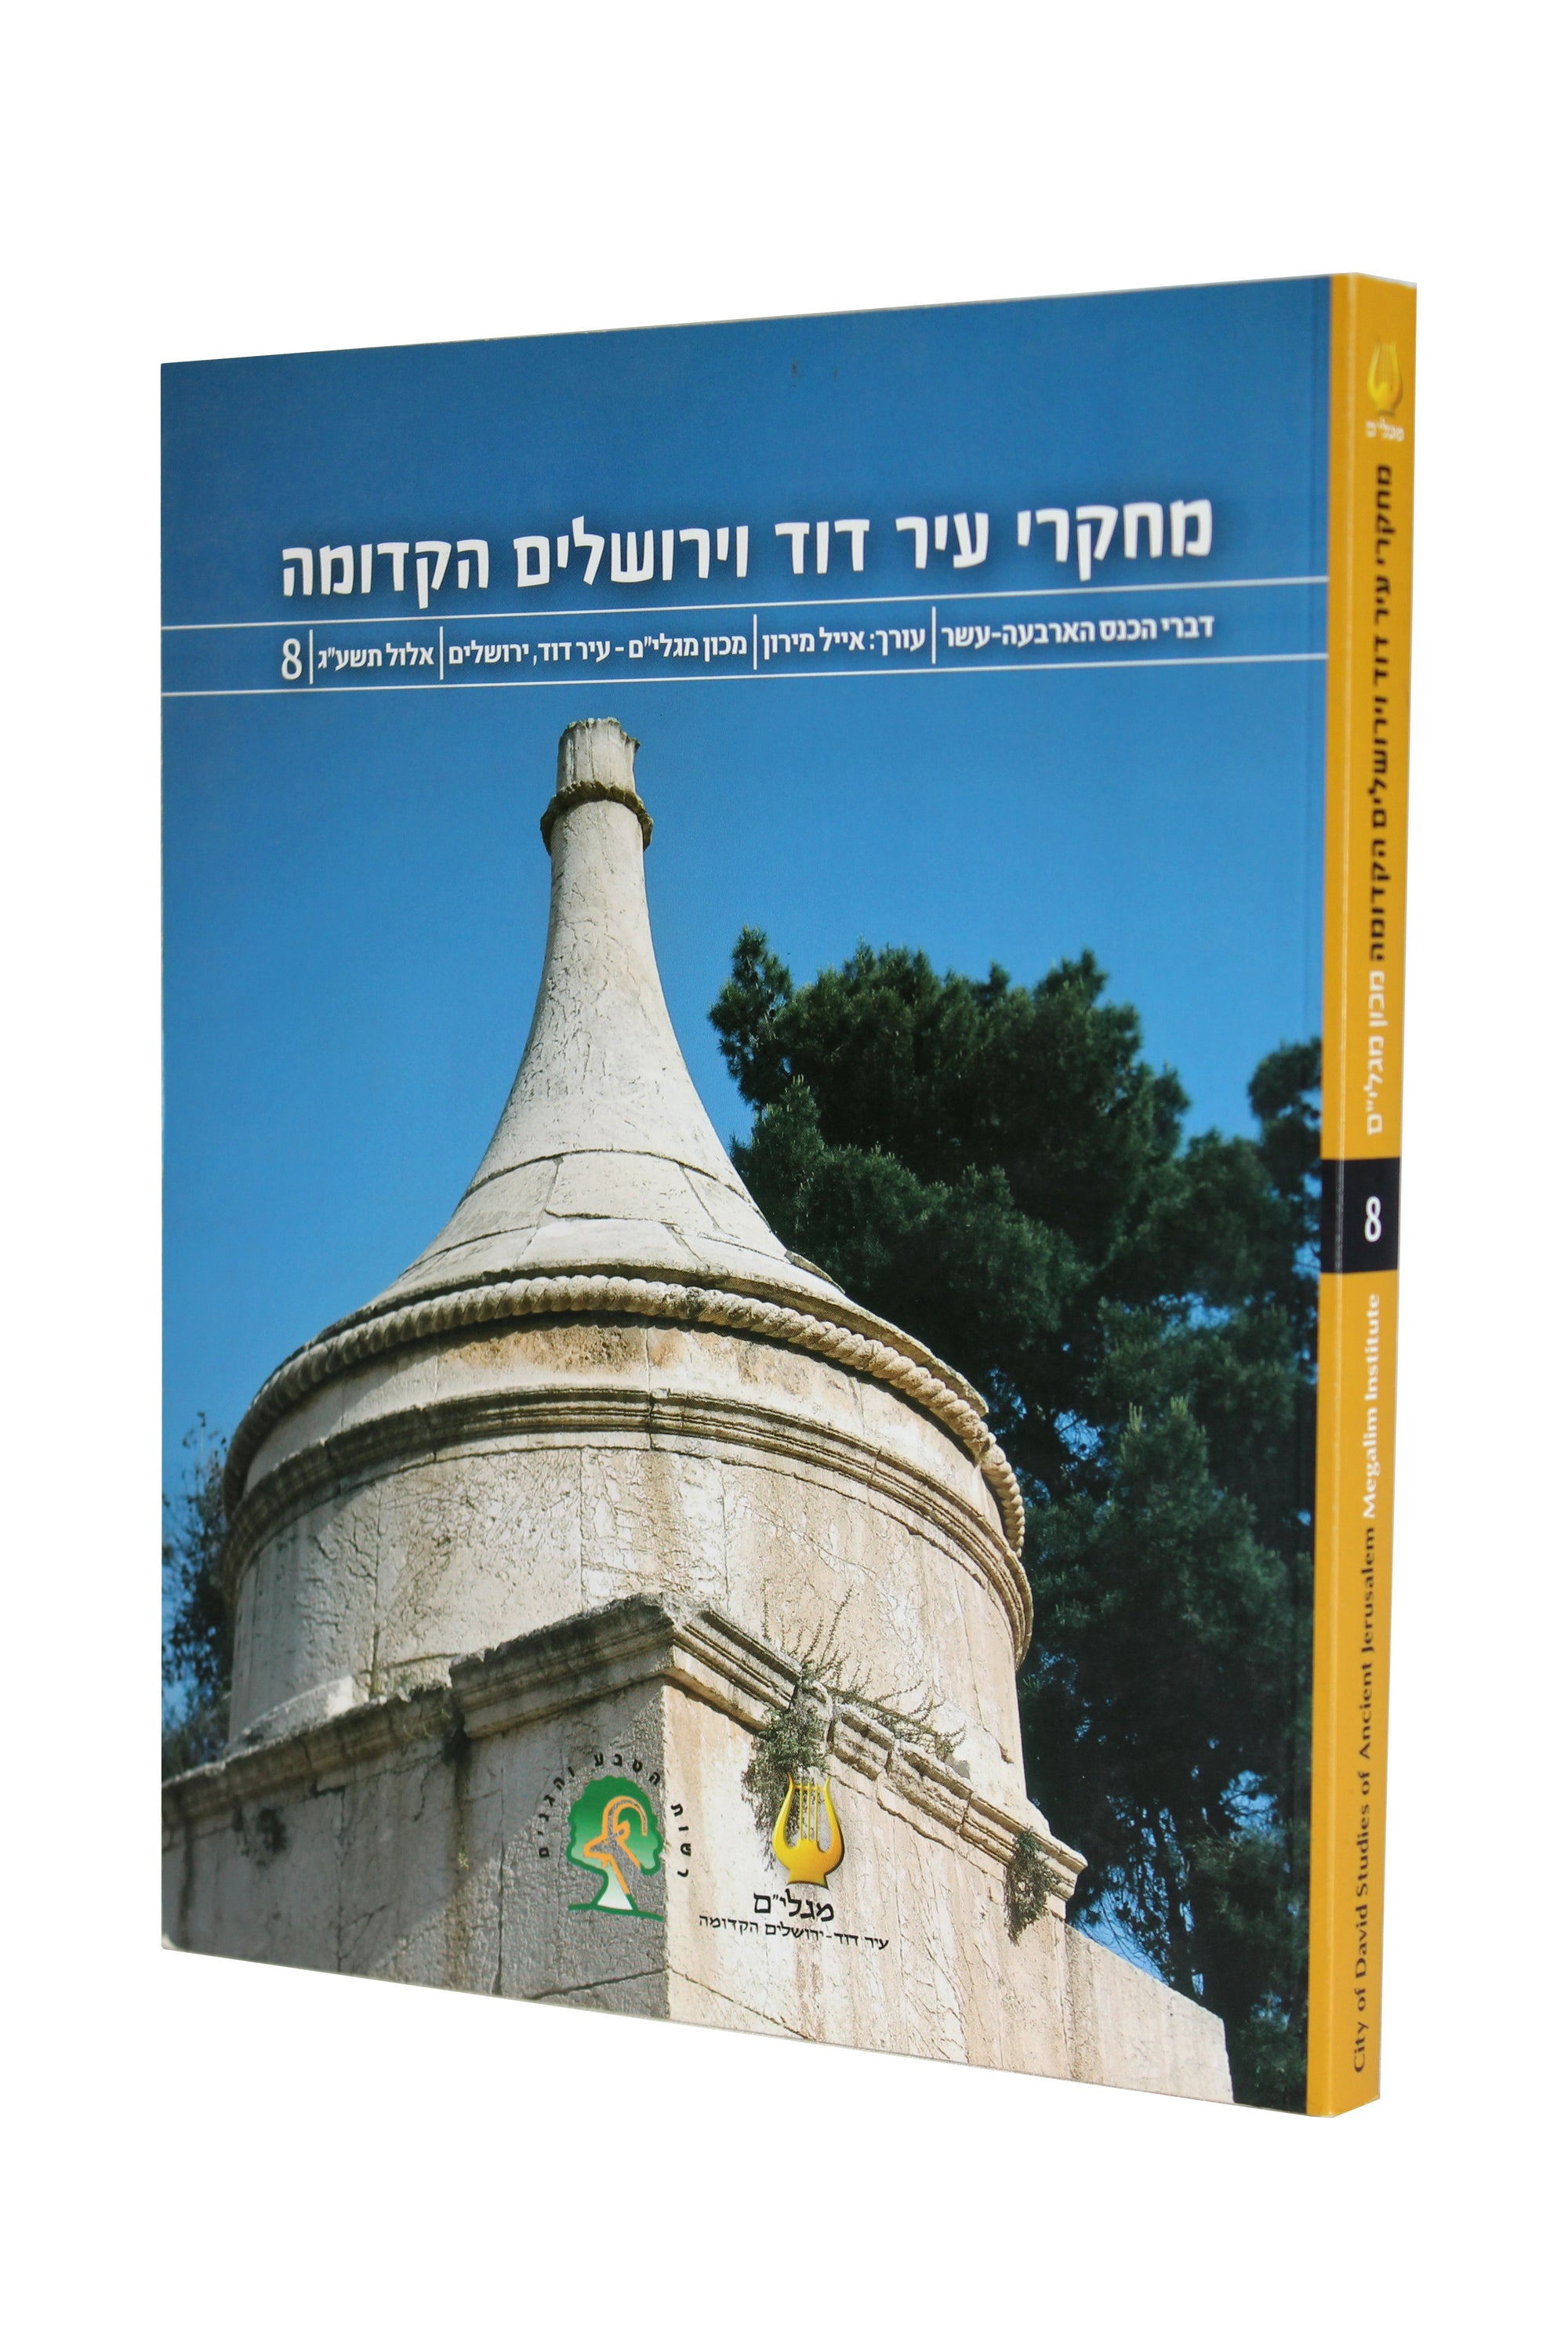 מאסופת מאמרי כנס מחקרי עיר דוד וירושלים הקדומה -   כרך שמיני